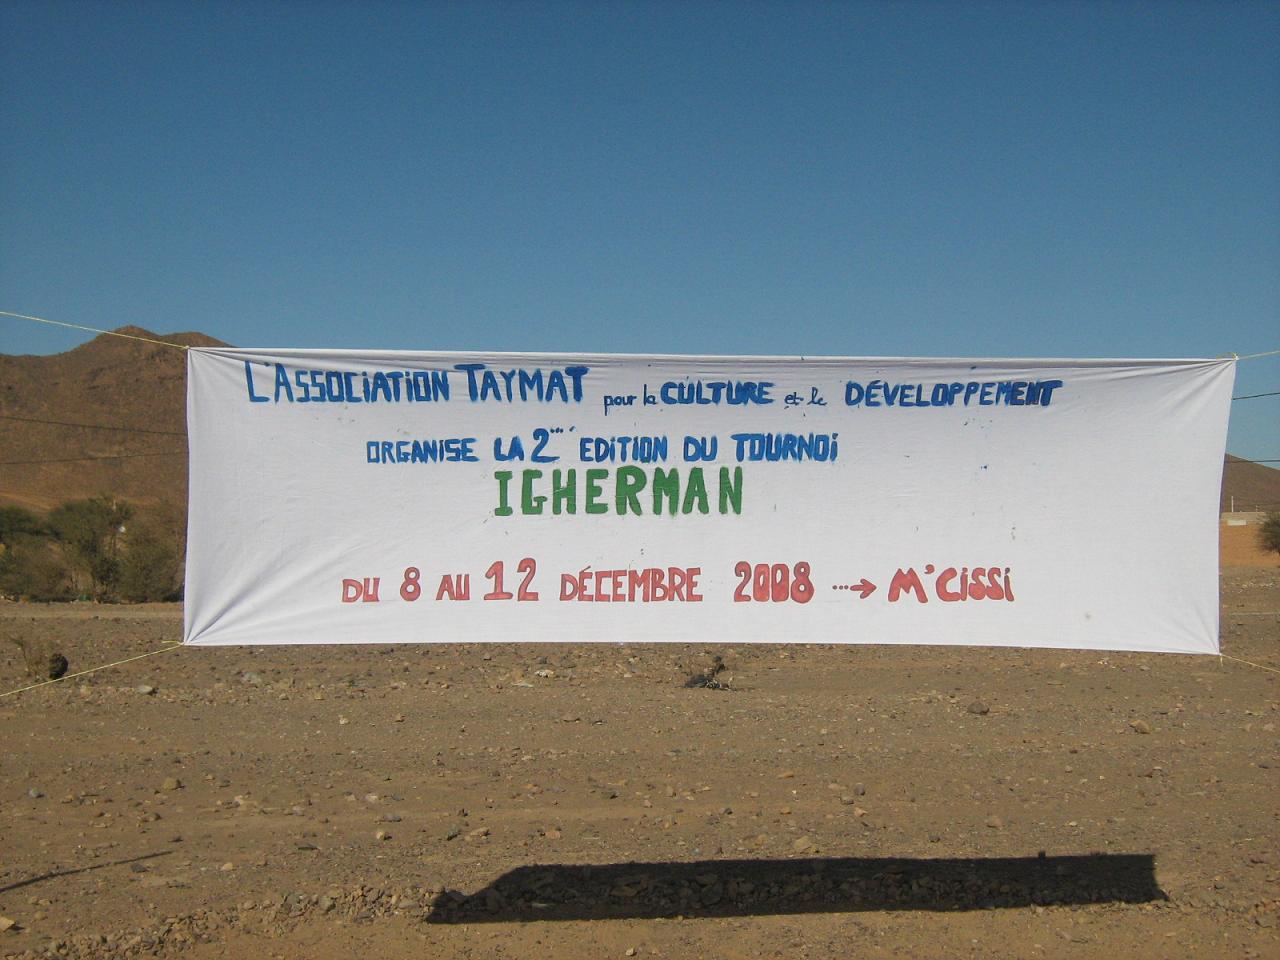 La 2ème edition du tournoi IGHERMAN 2008 organisé par l’association Taymat